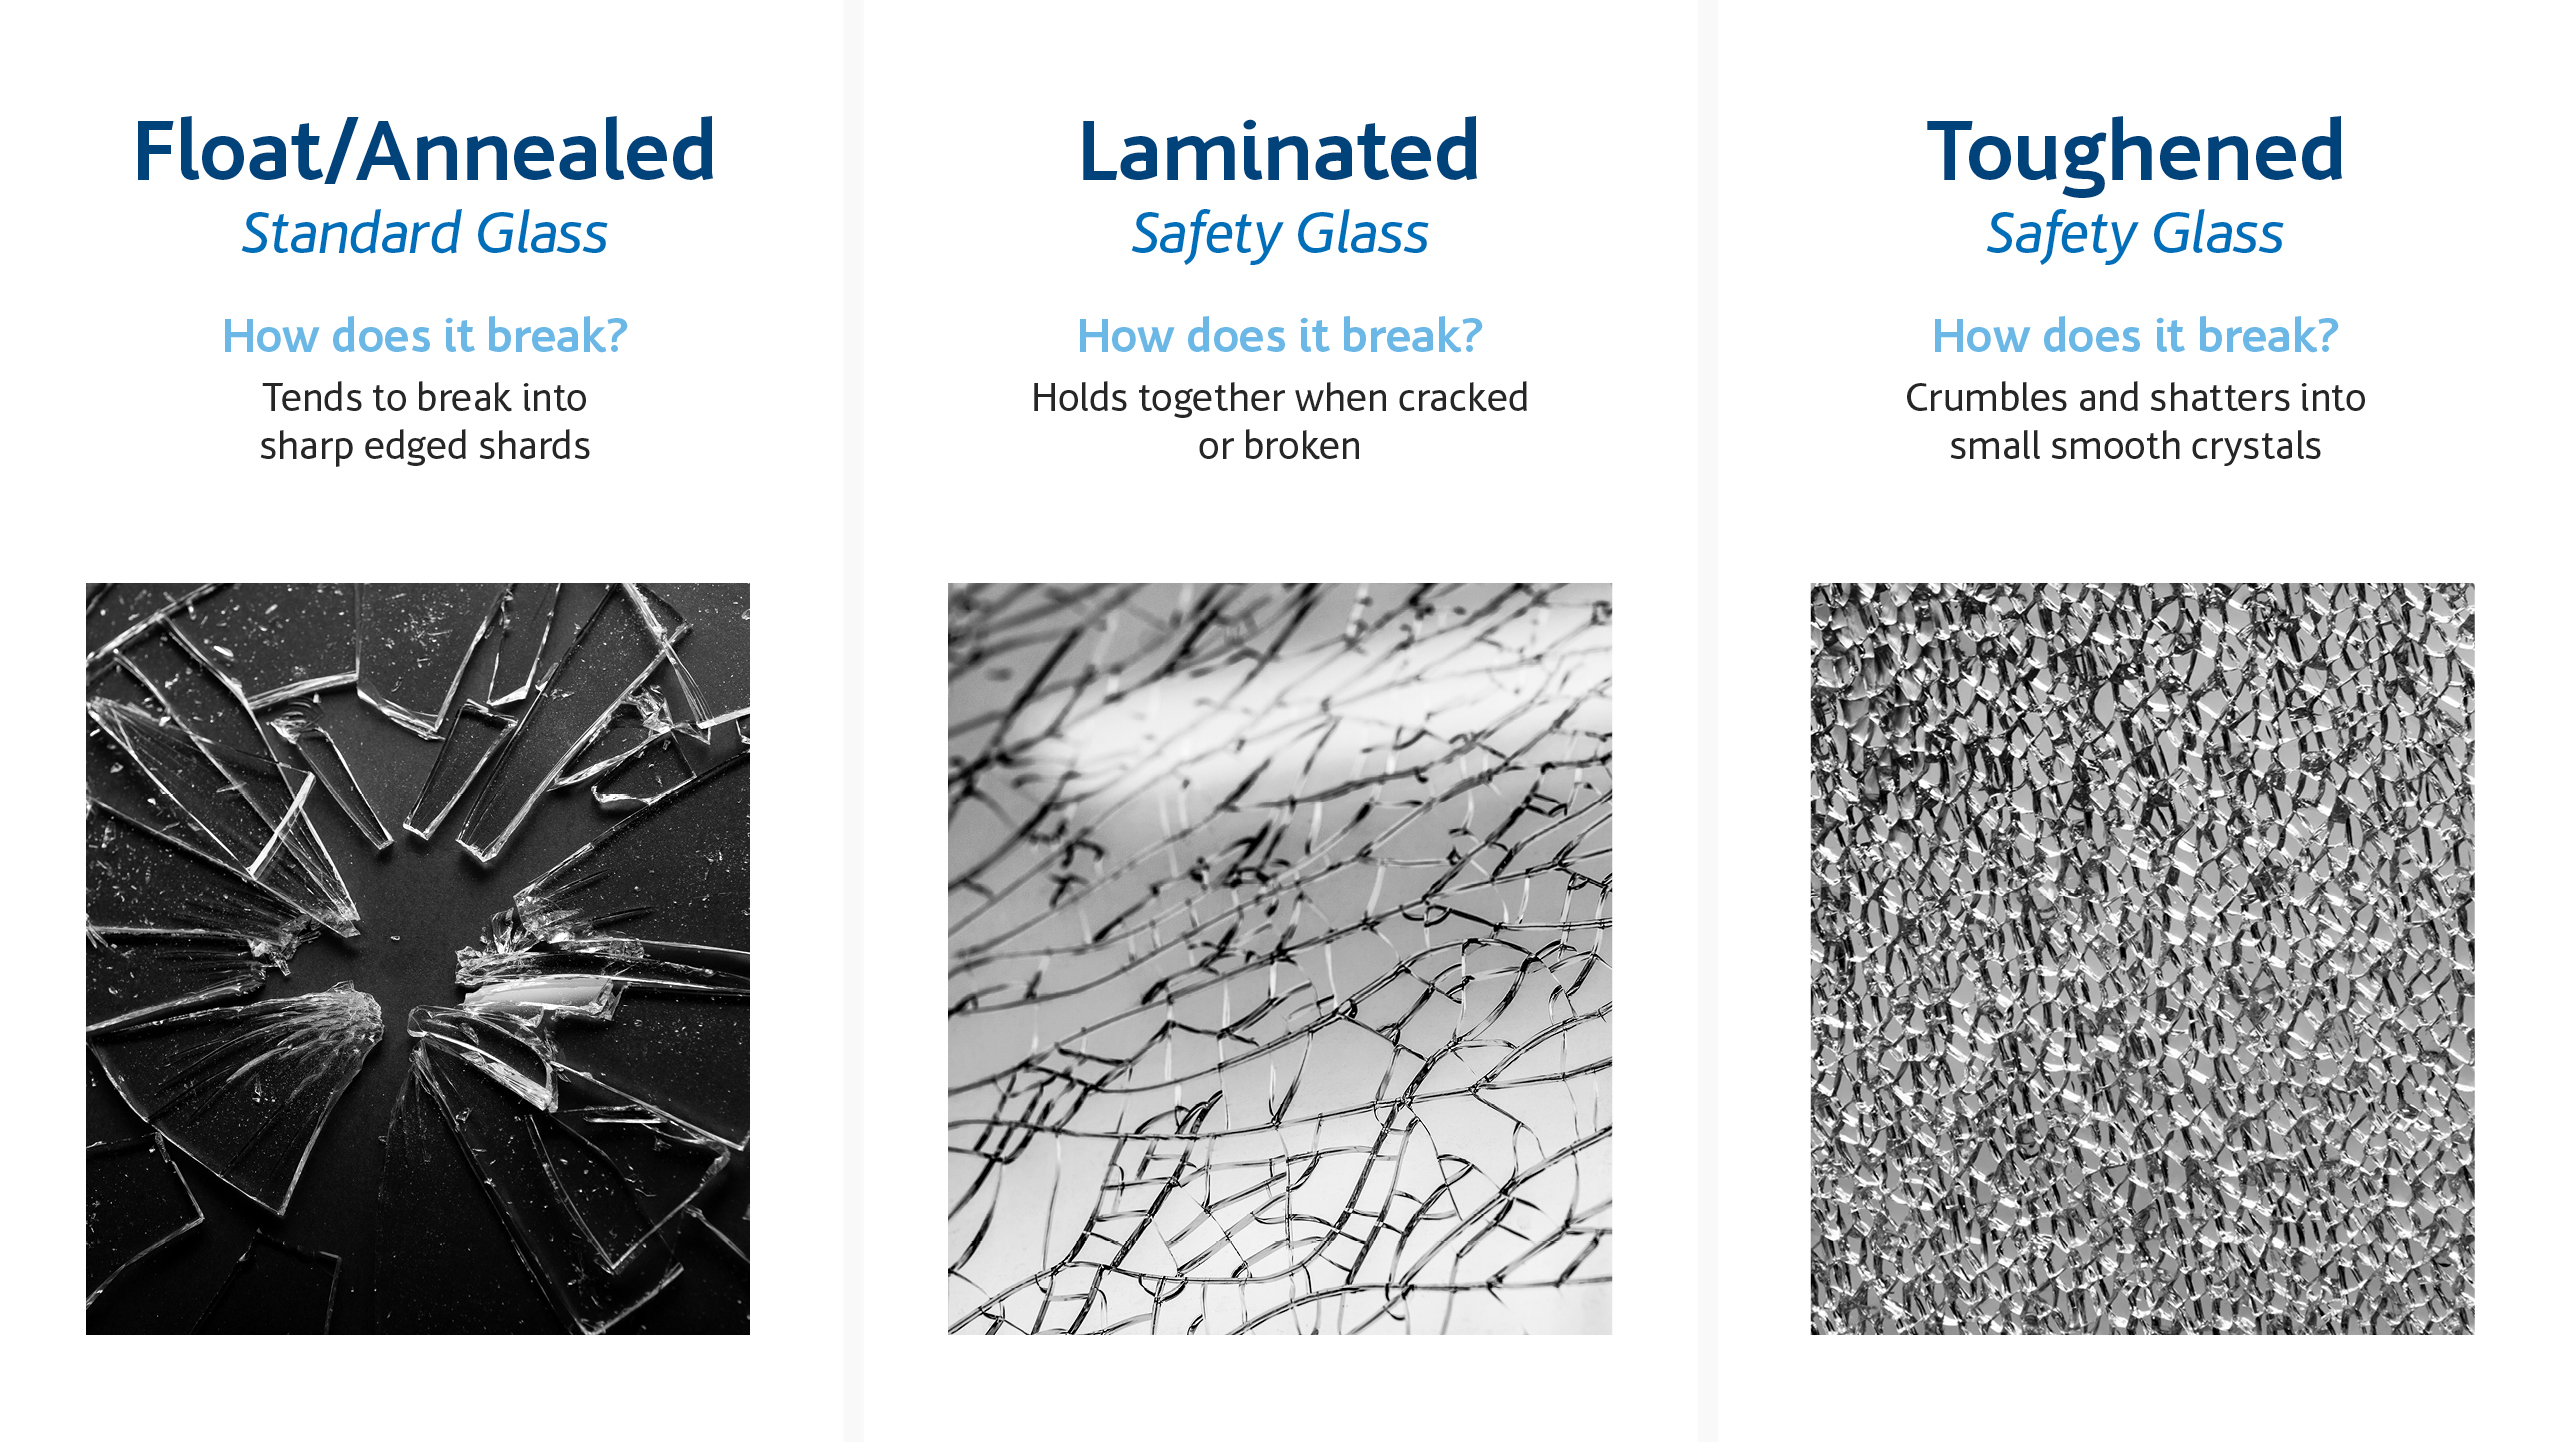 Quais são os diferentes tipos de quebra de vidro?